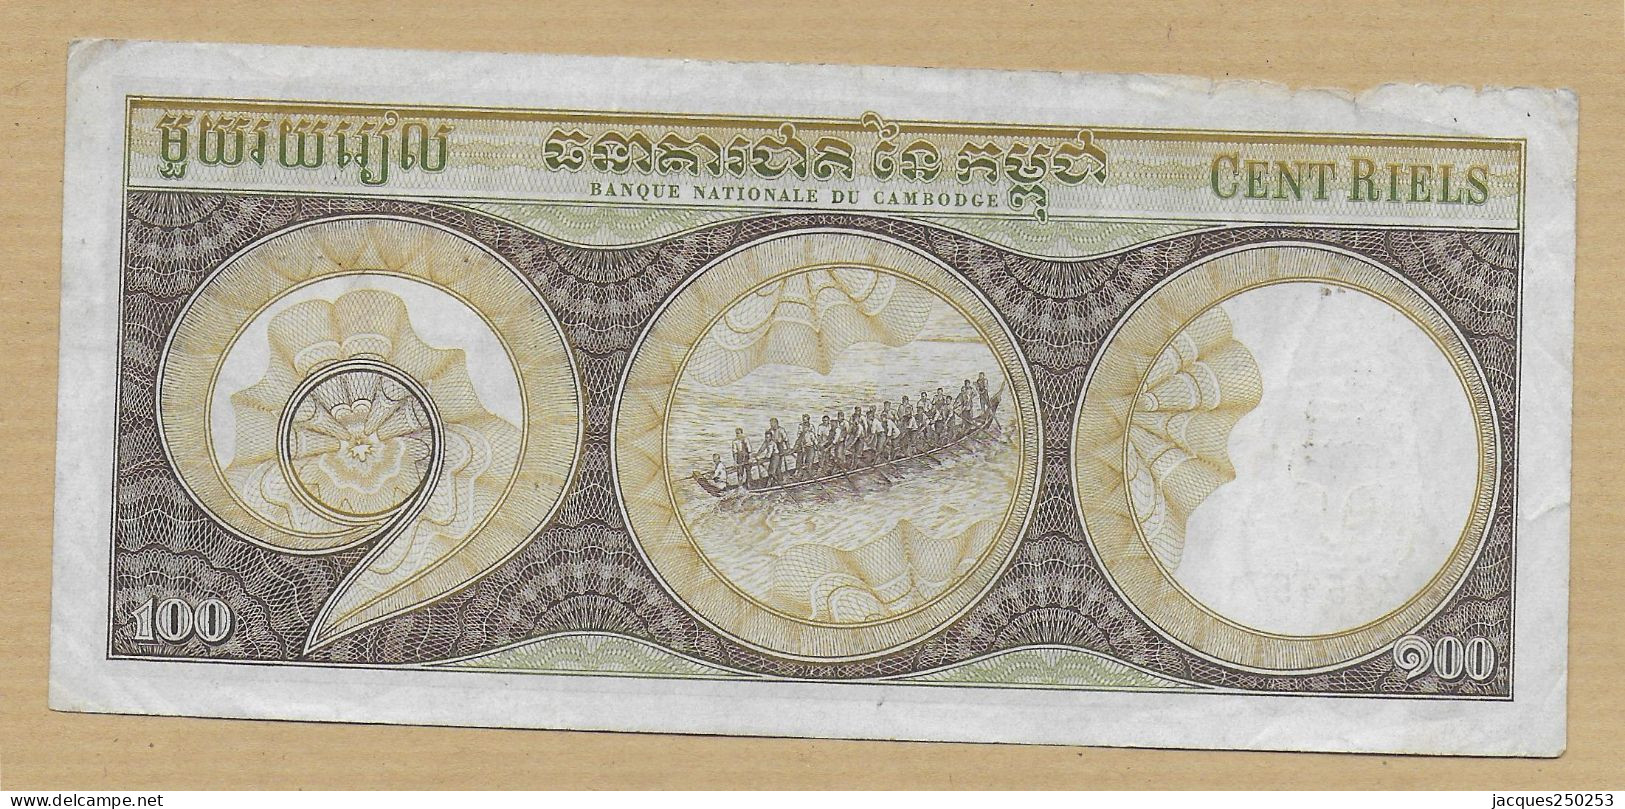 100 Riels Cambodge - Cambogia